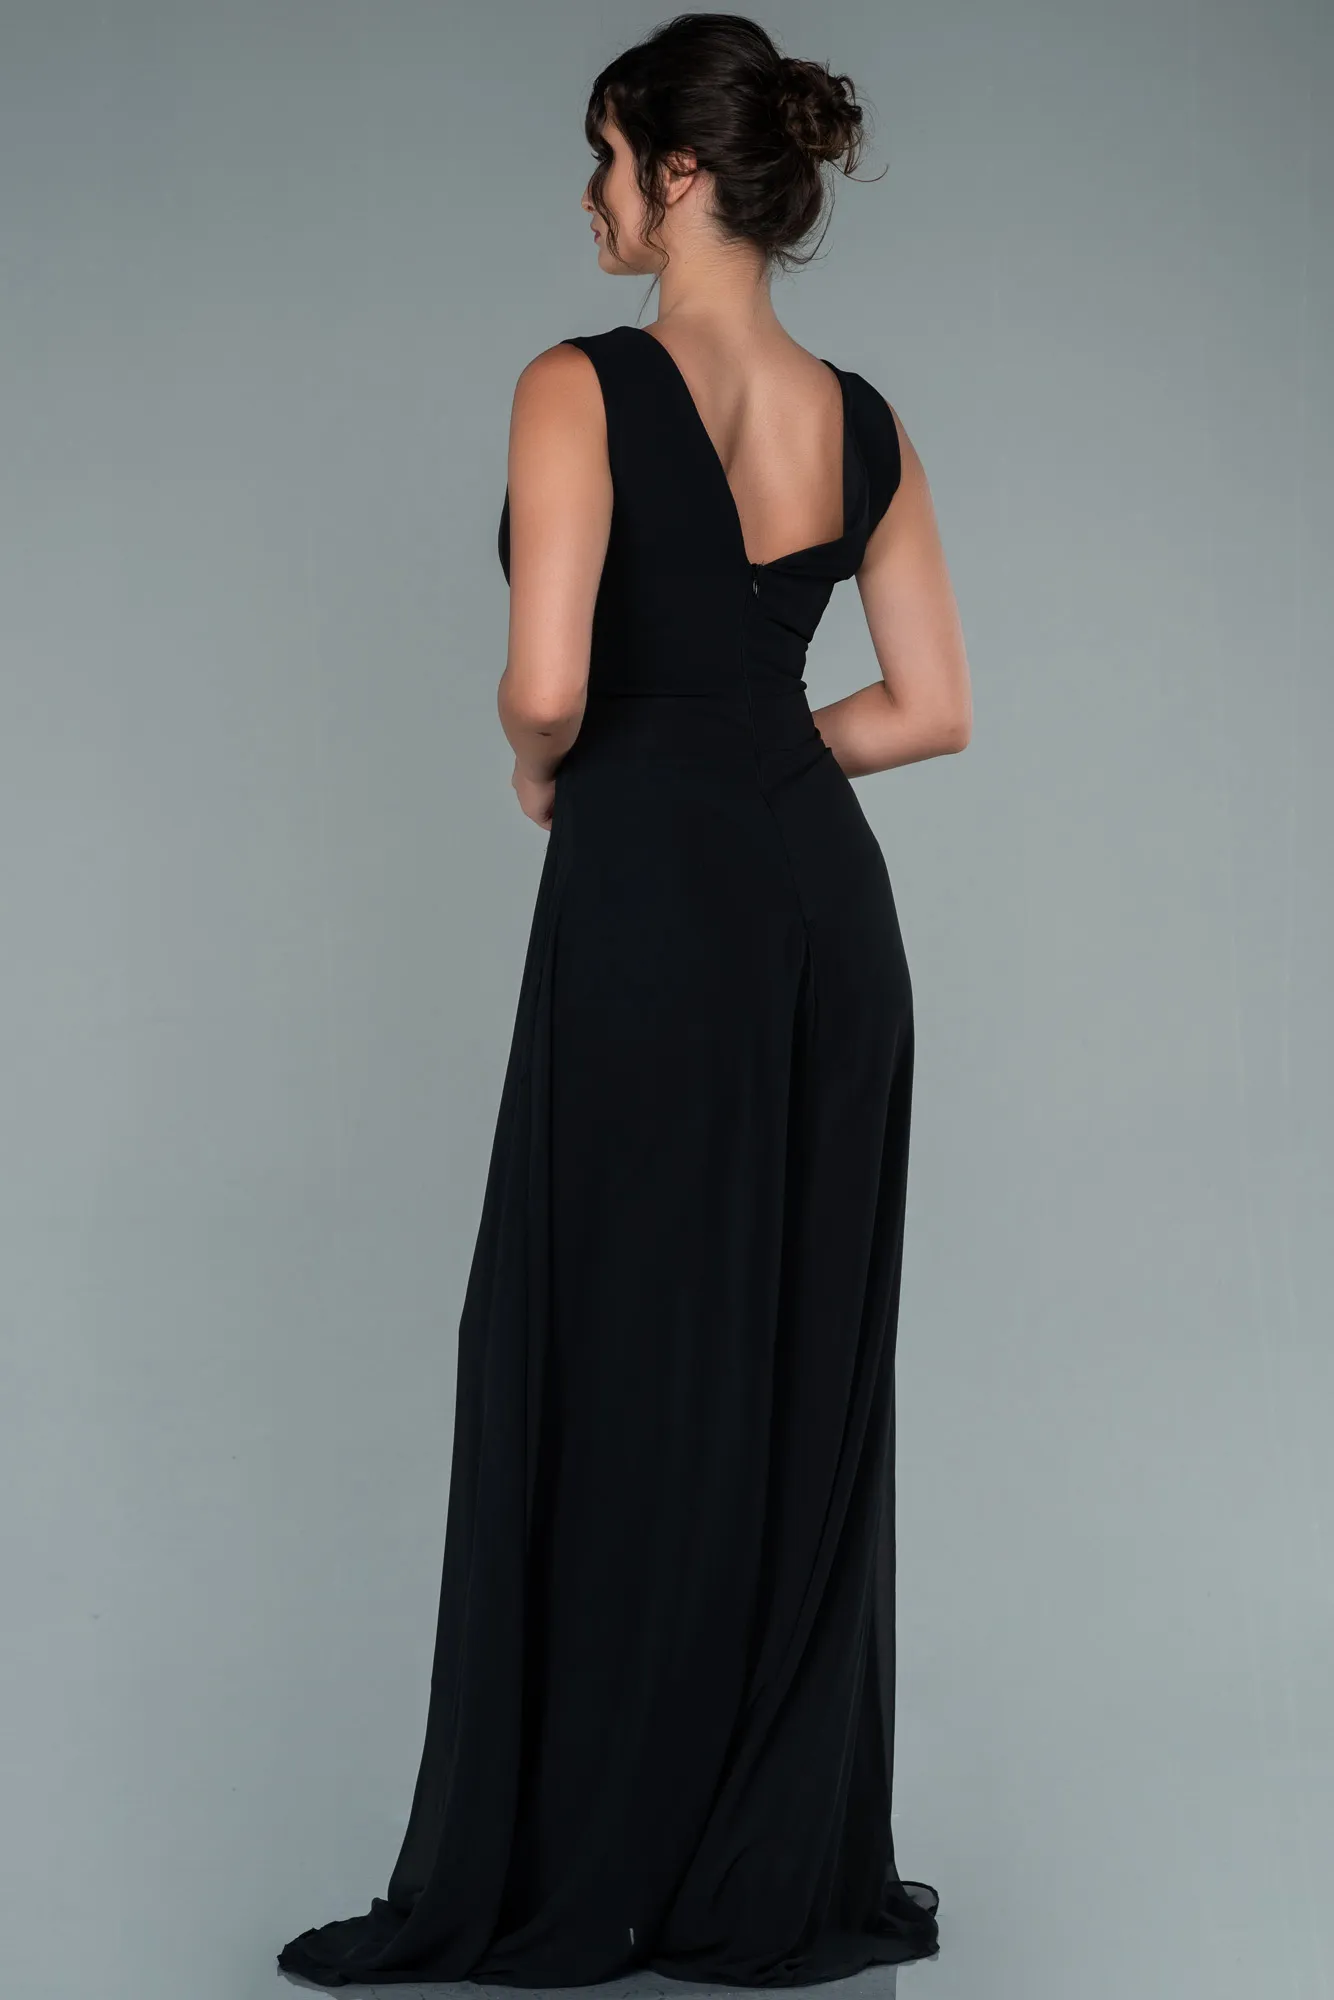 Black-Chiffon Invitation Dress ABT075